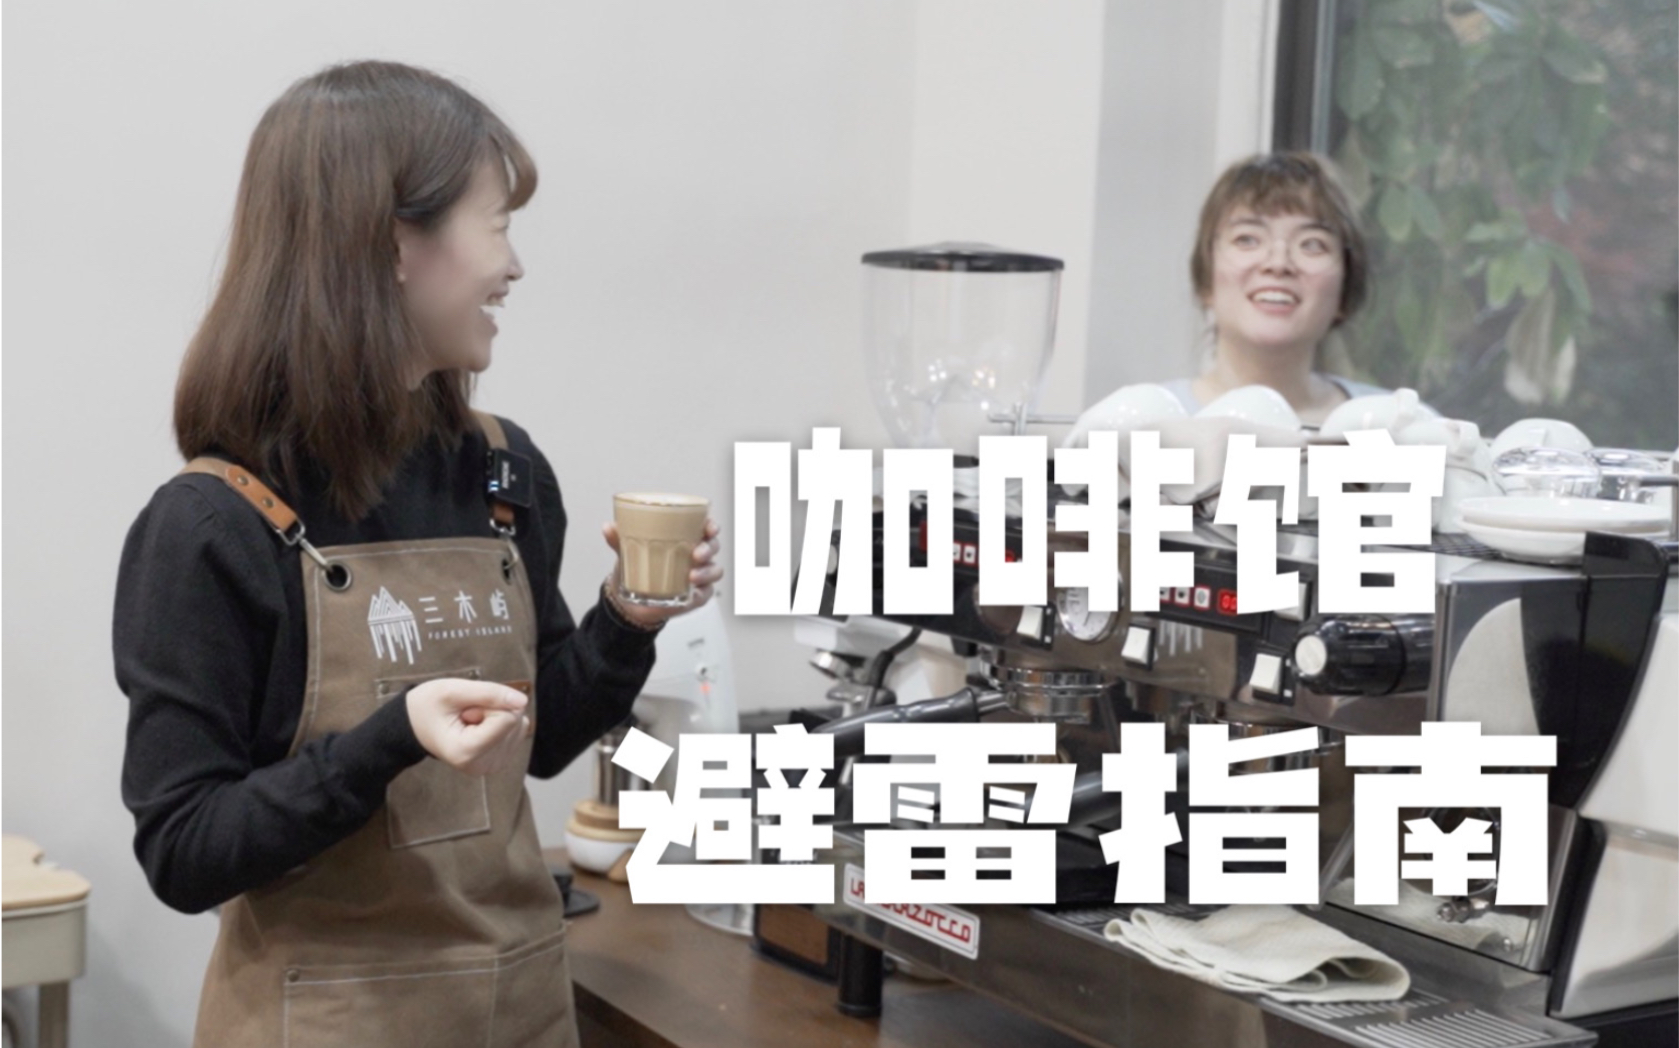 上海咖啡文化周今天开幕，在氤氲咖啡香中品味城市文化 - 封面新闻